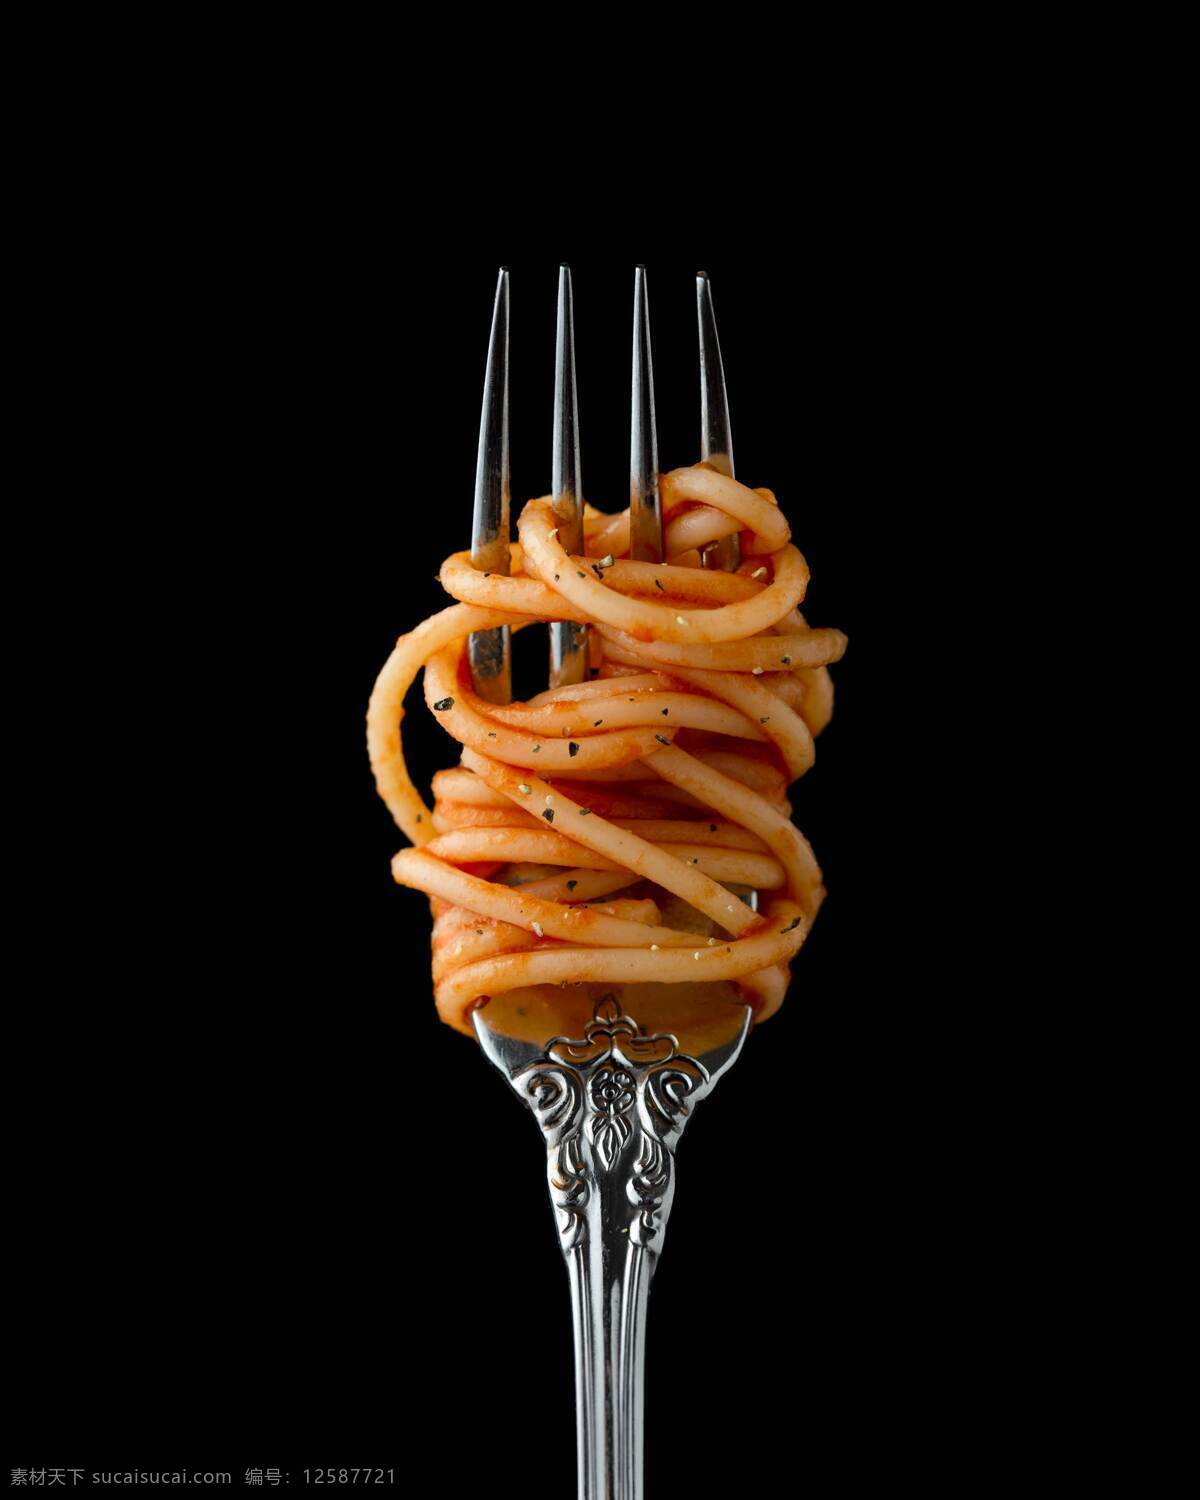 叉子和意面 叉子 意面 意大利面 西餐 美味 美食 西餐厅 海鲜意面 生活百科 生活素材